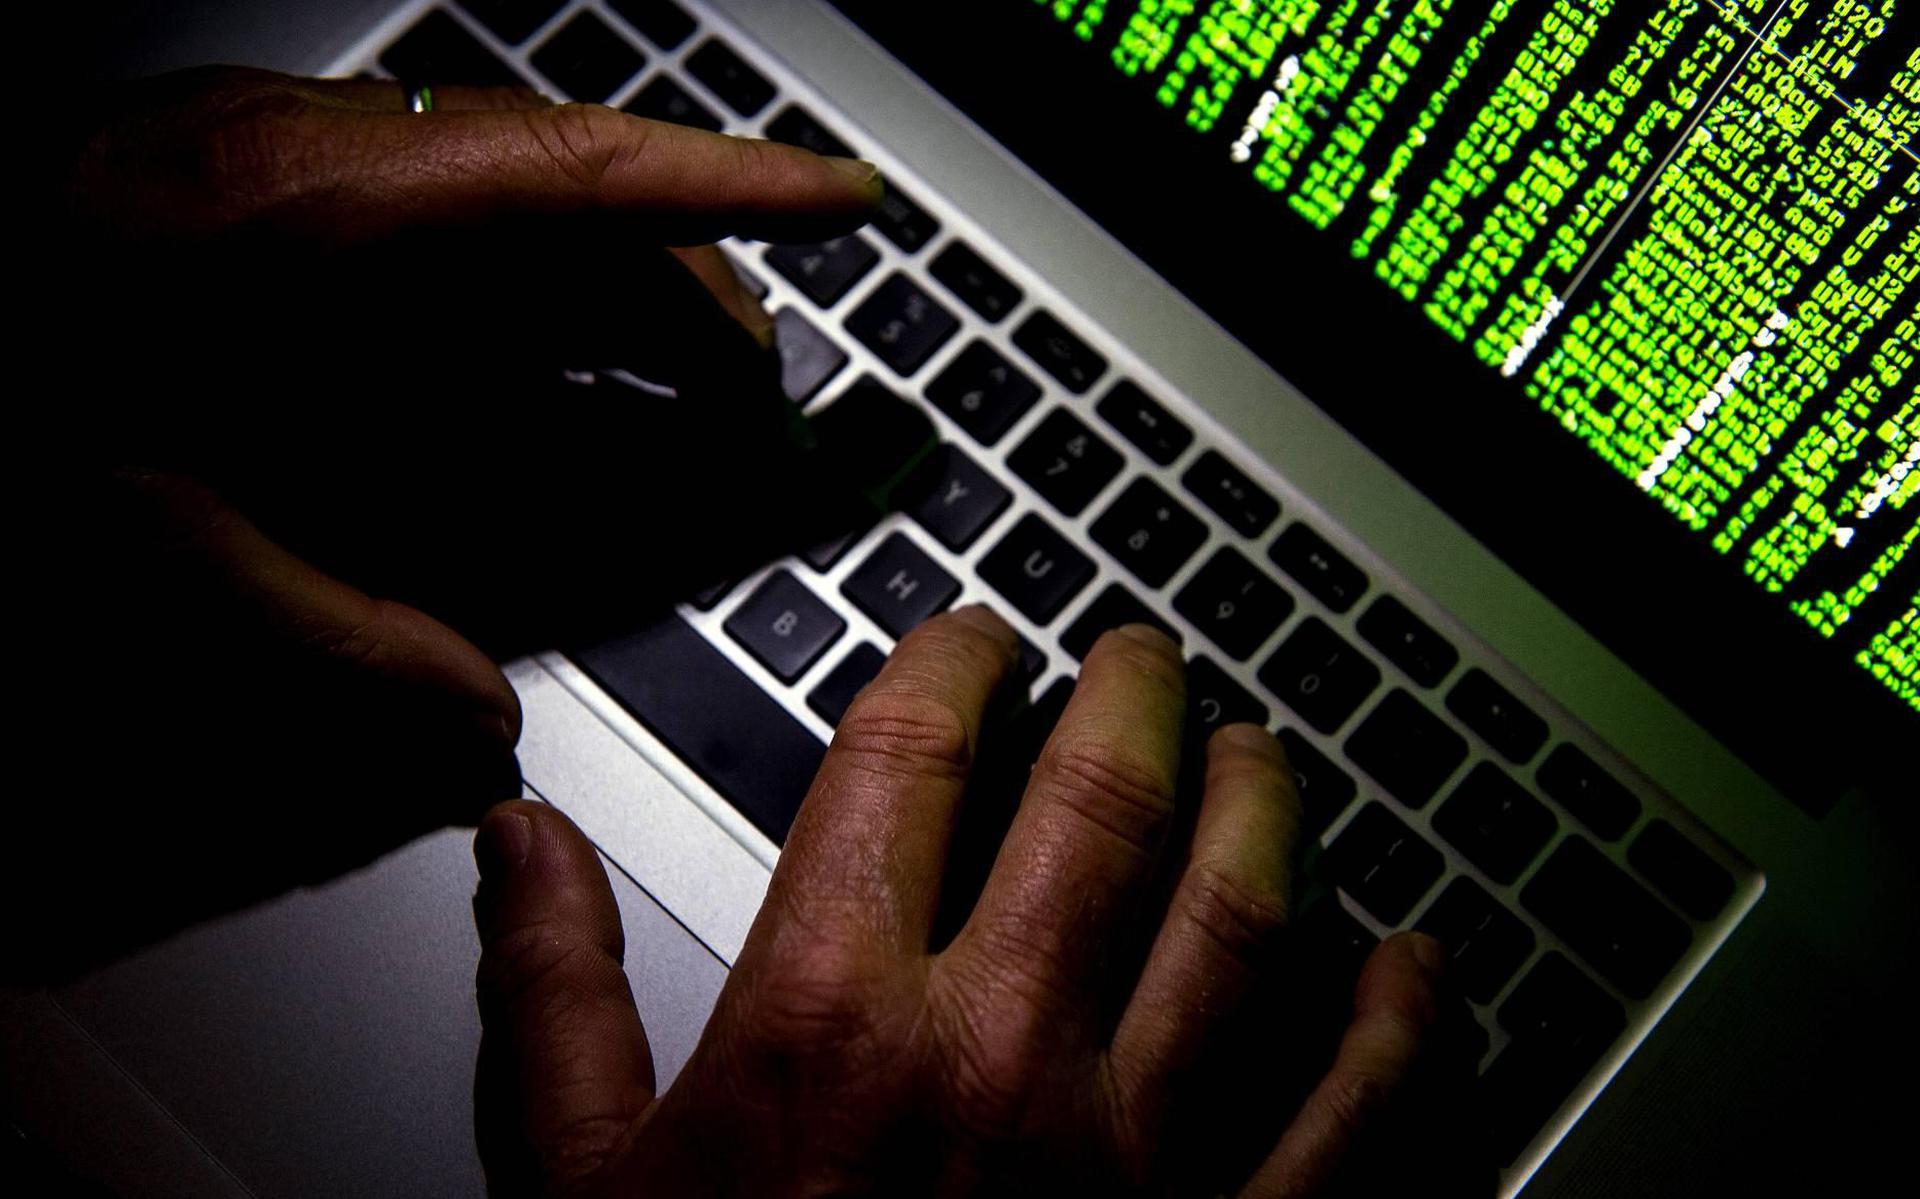 Het administratiesysteem van het Sociaal Domein van de gemeente Noordenveld is woensdag getroffen door een ransomware-aanval.